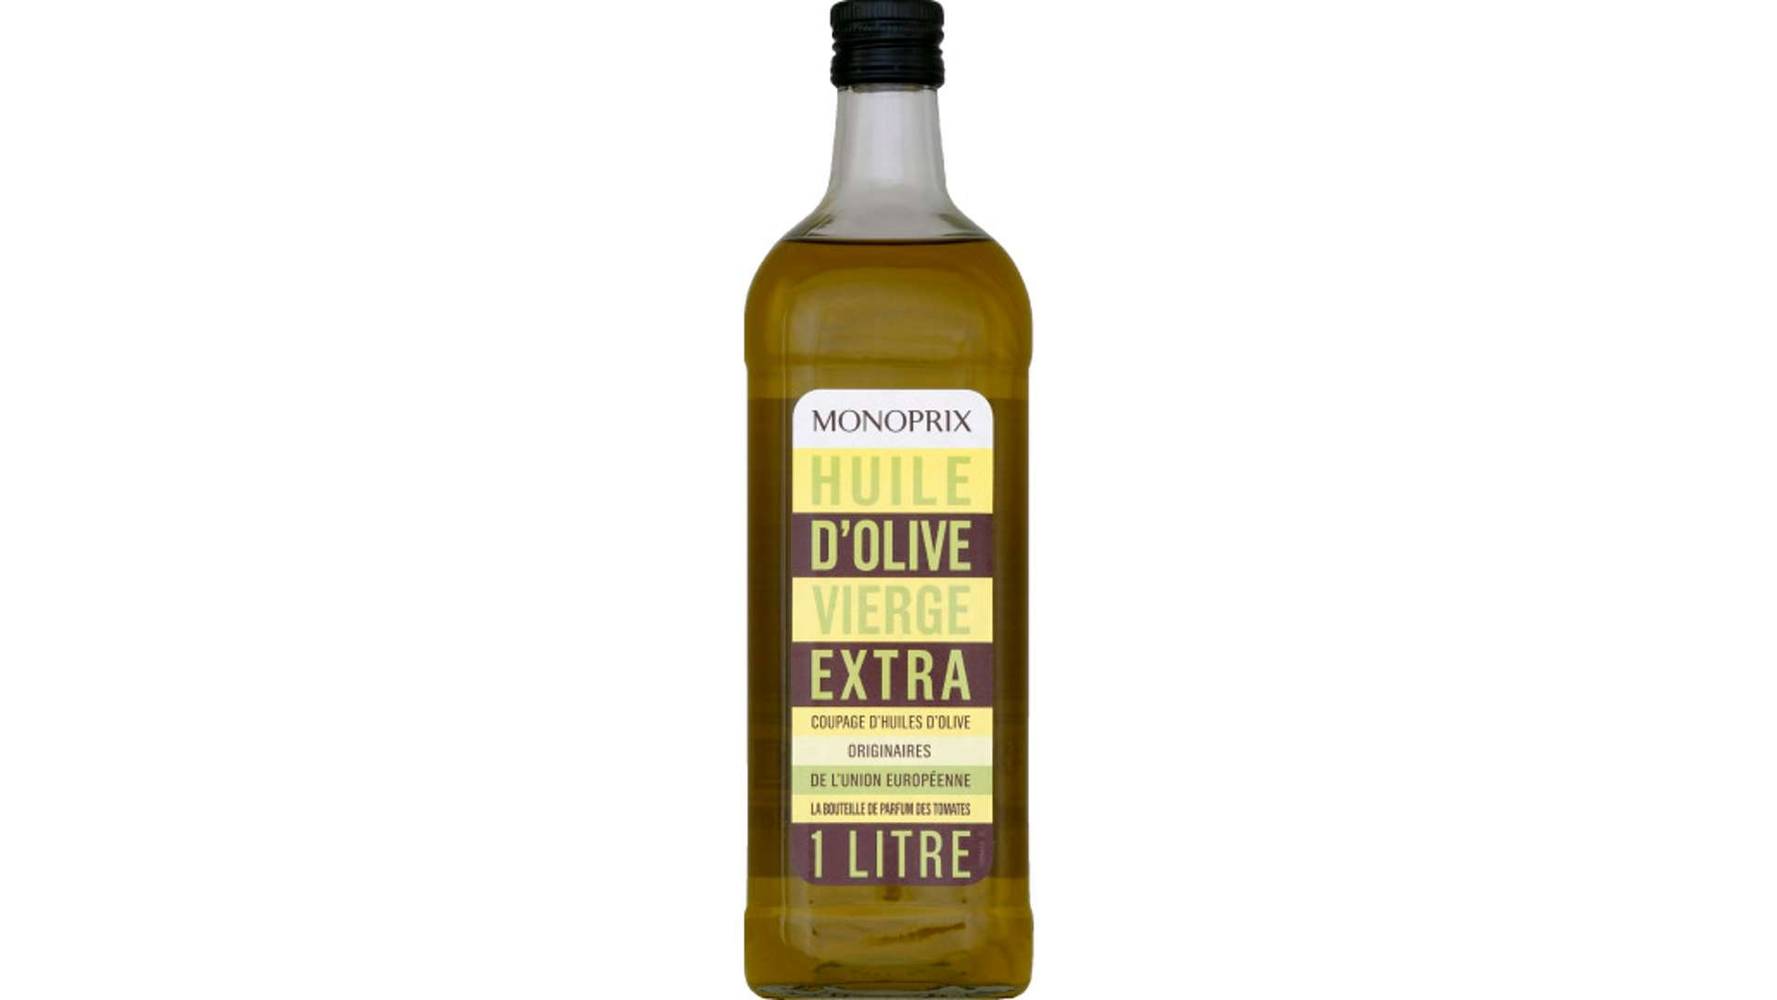 Monoprix Huile d'olive vierge extra La bouteille de 1 l